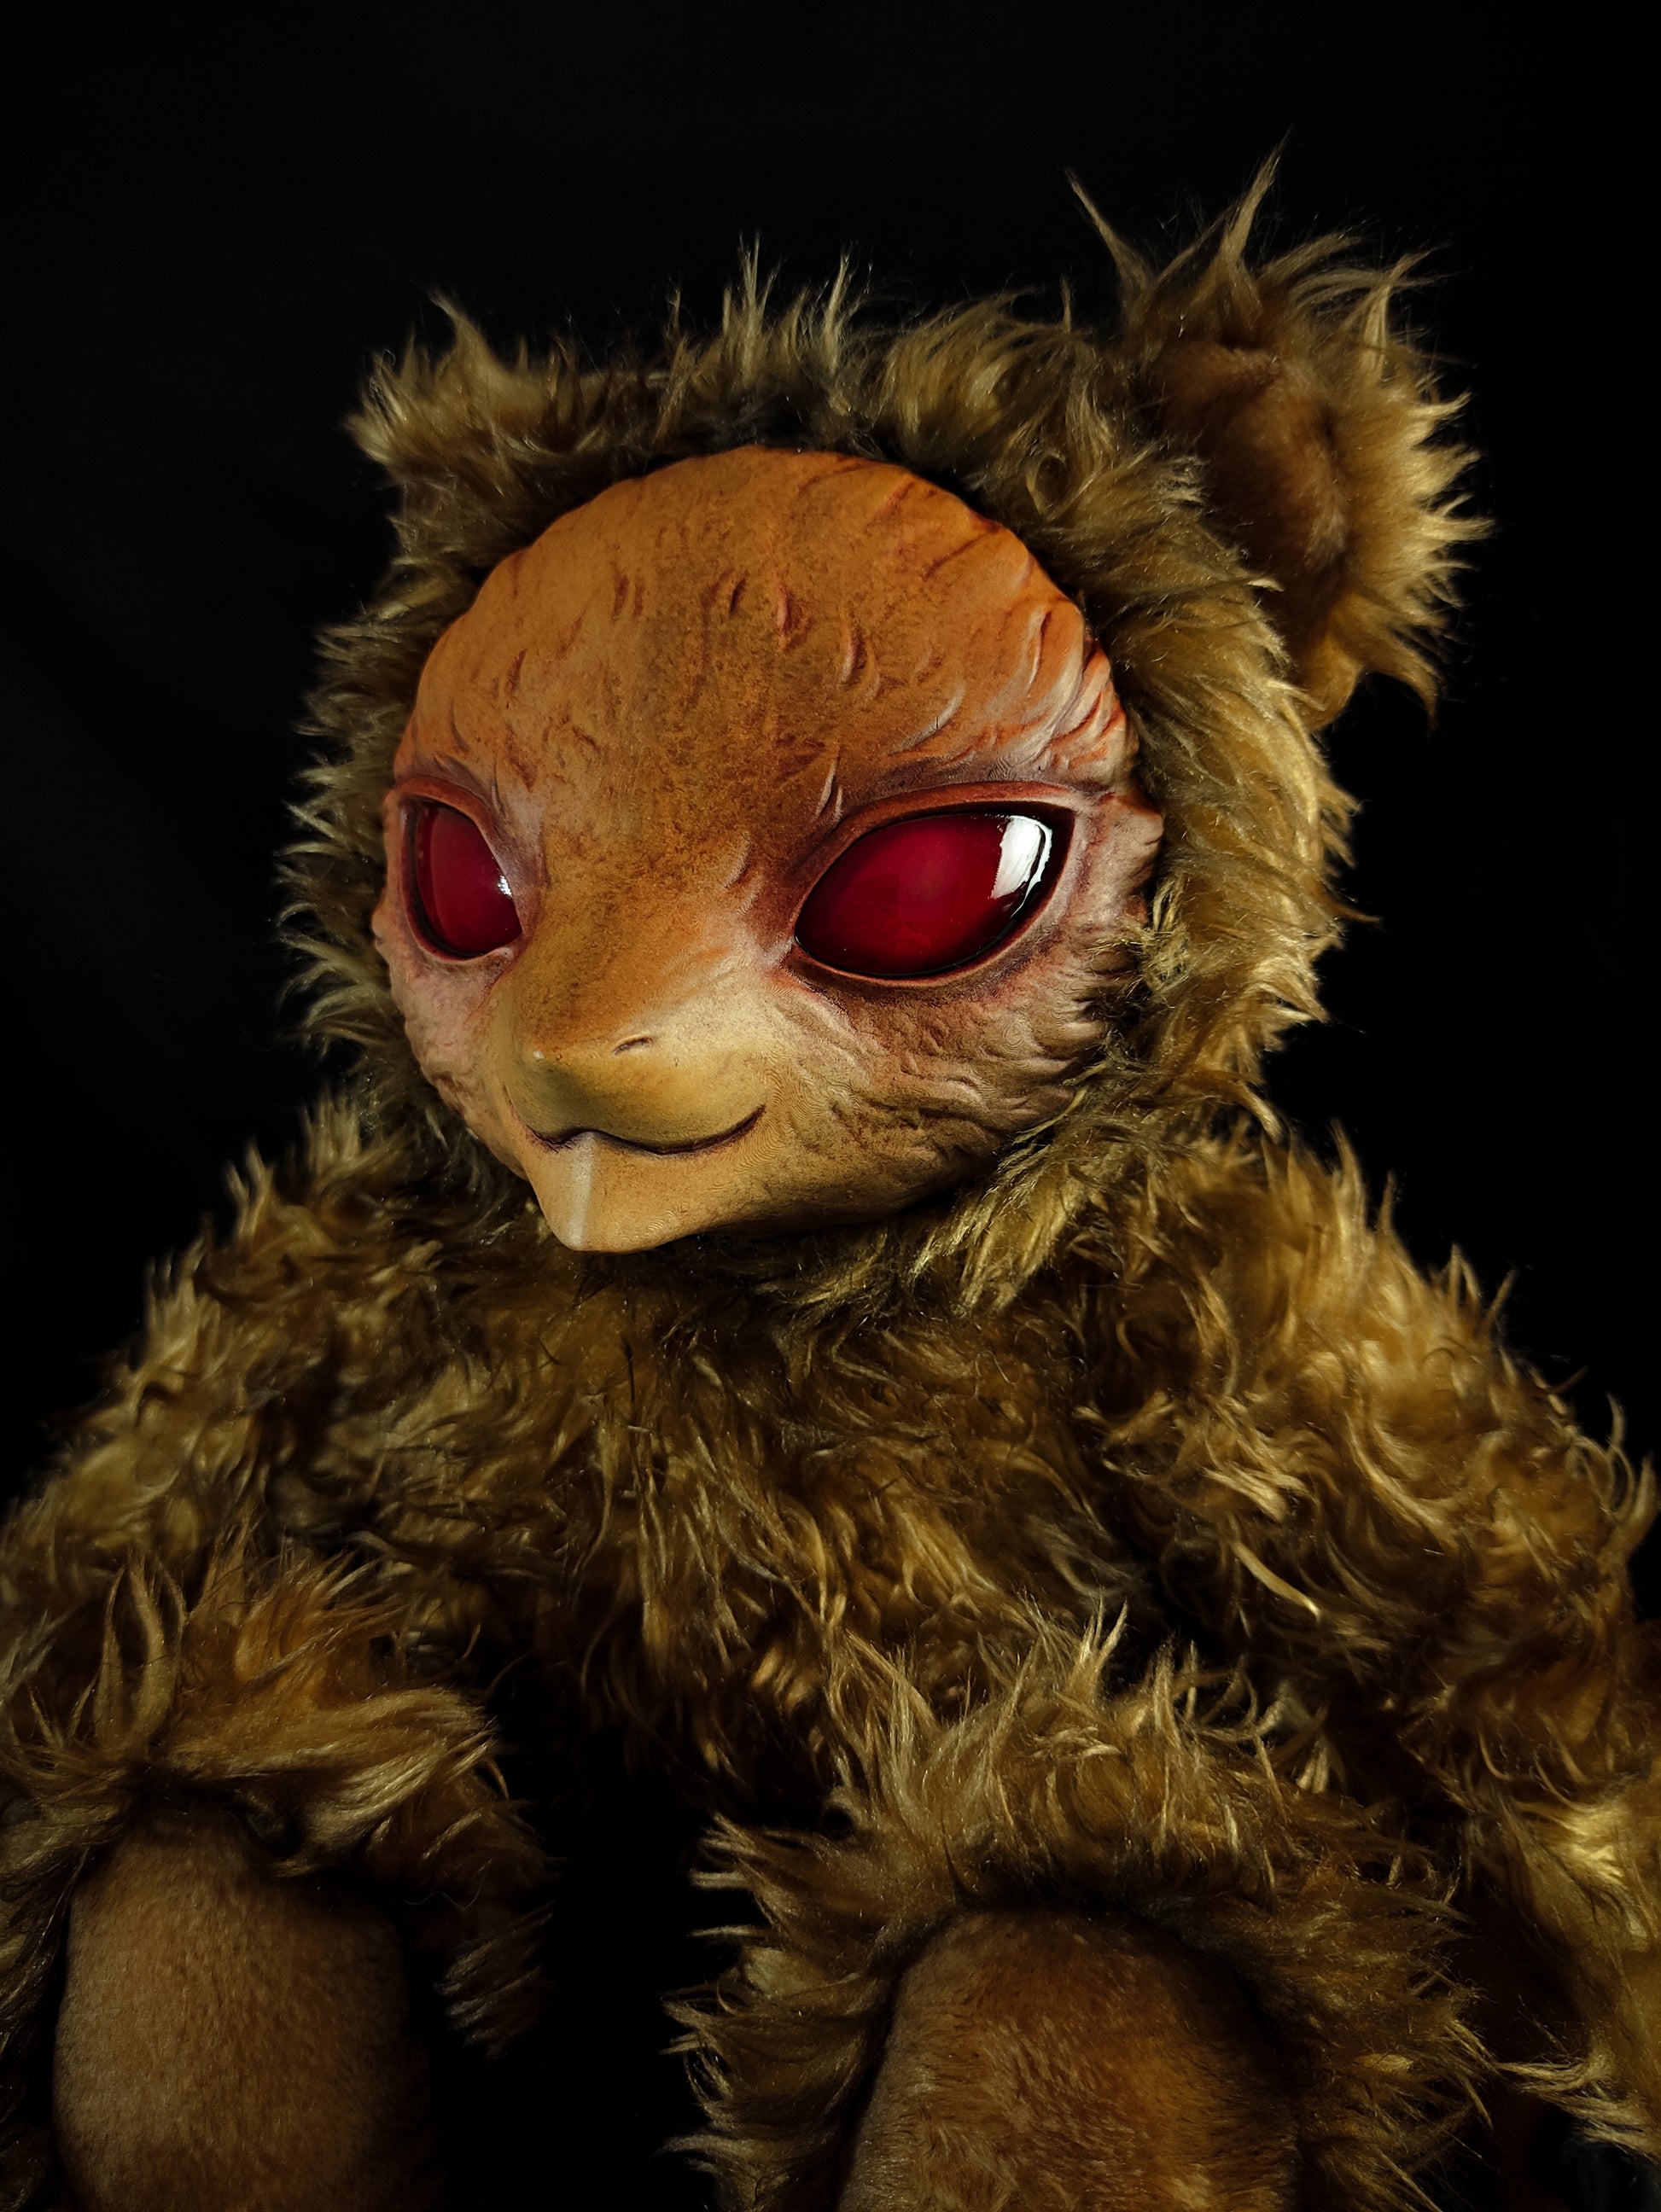 Vipal (Sunsetz Ver.) - Monster Art Doll Plush Toy